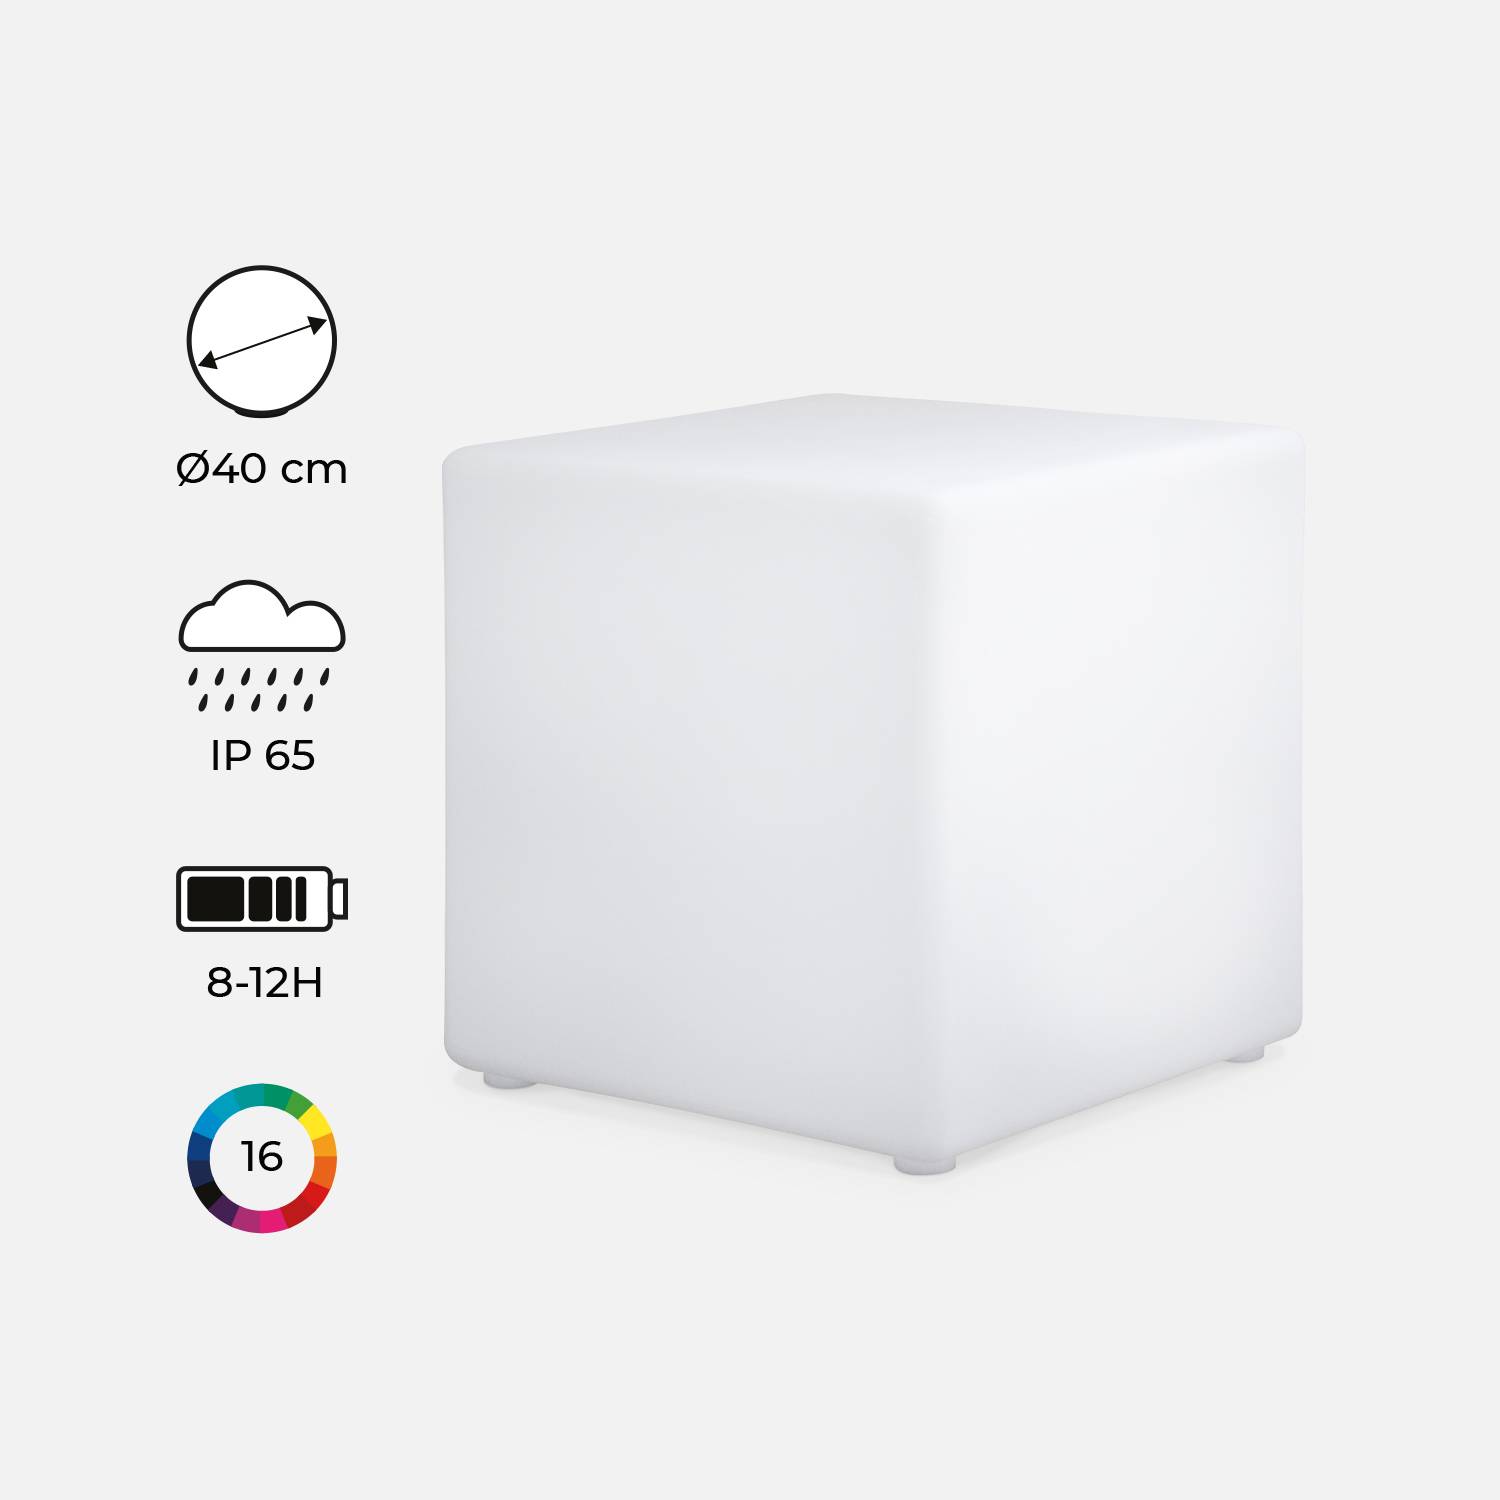 Cubo de iluminação LED multicolor e recarregável, sem cabos, para exterior  - 16 cores  - CUBO DE ILUMINAÇÃO LED, 40 cm Photo2